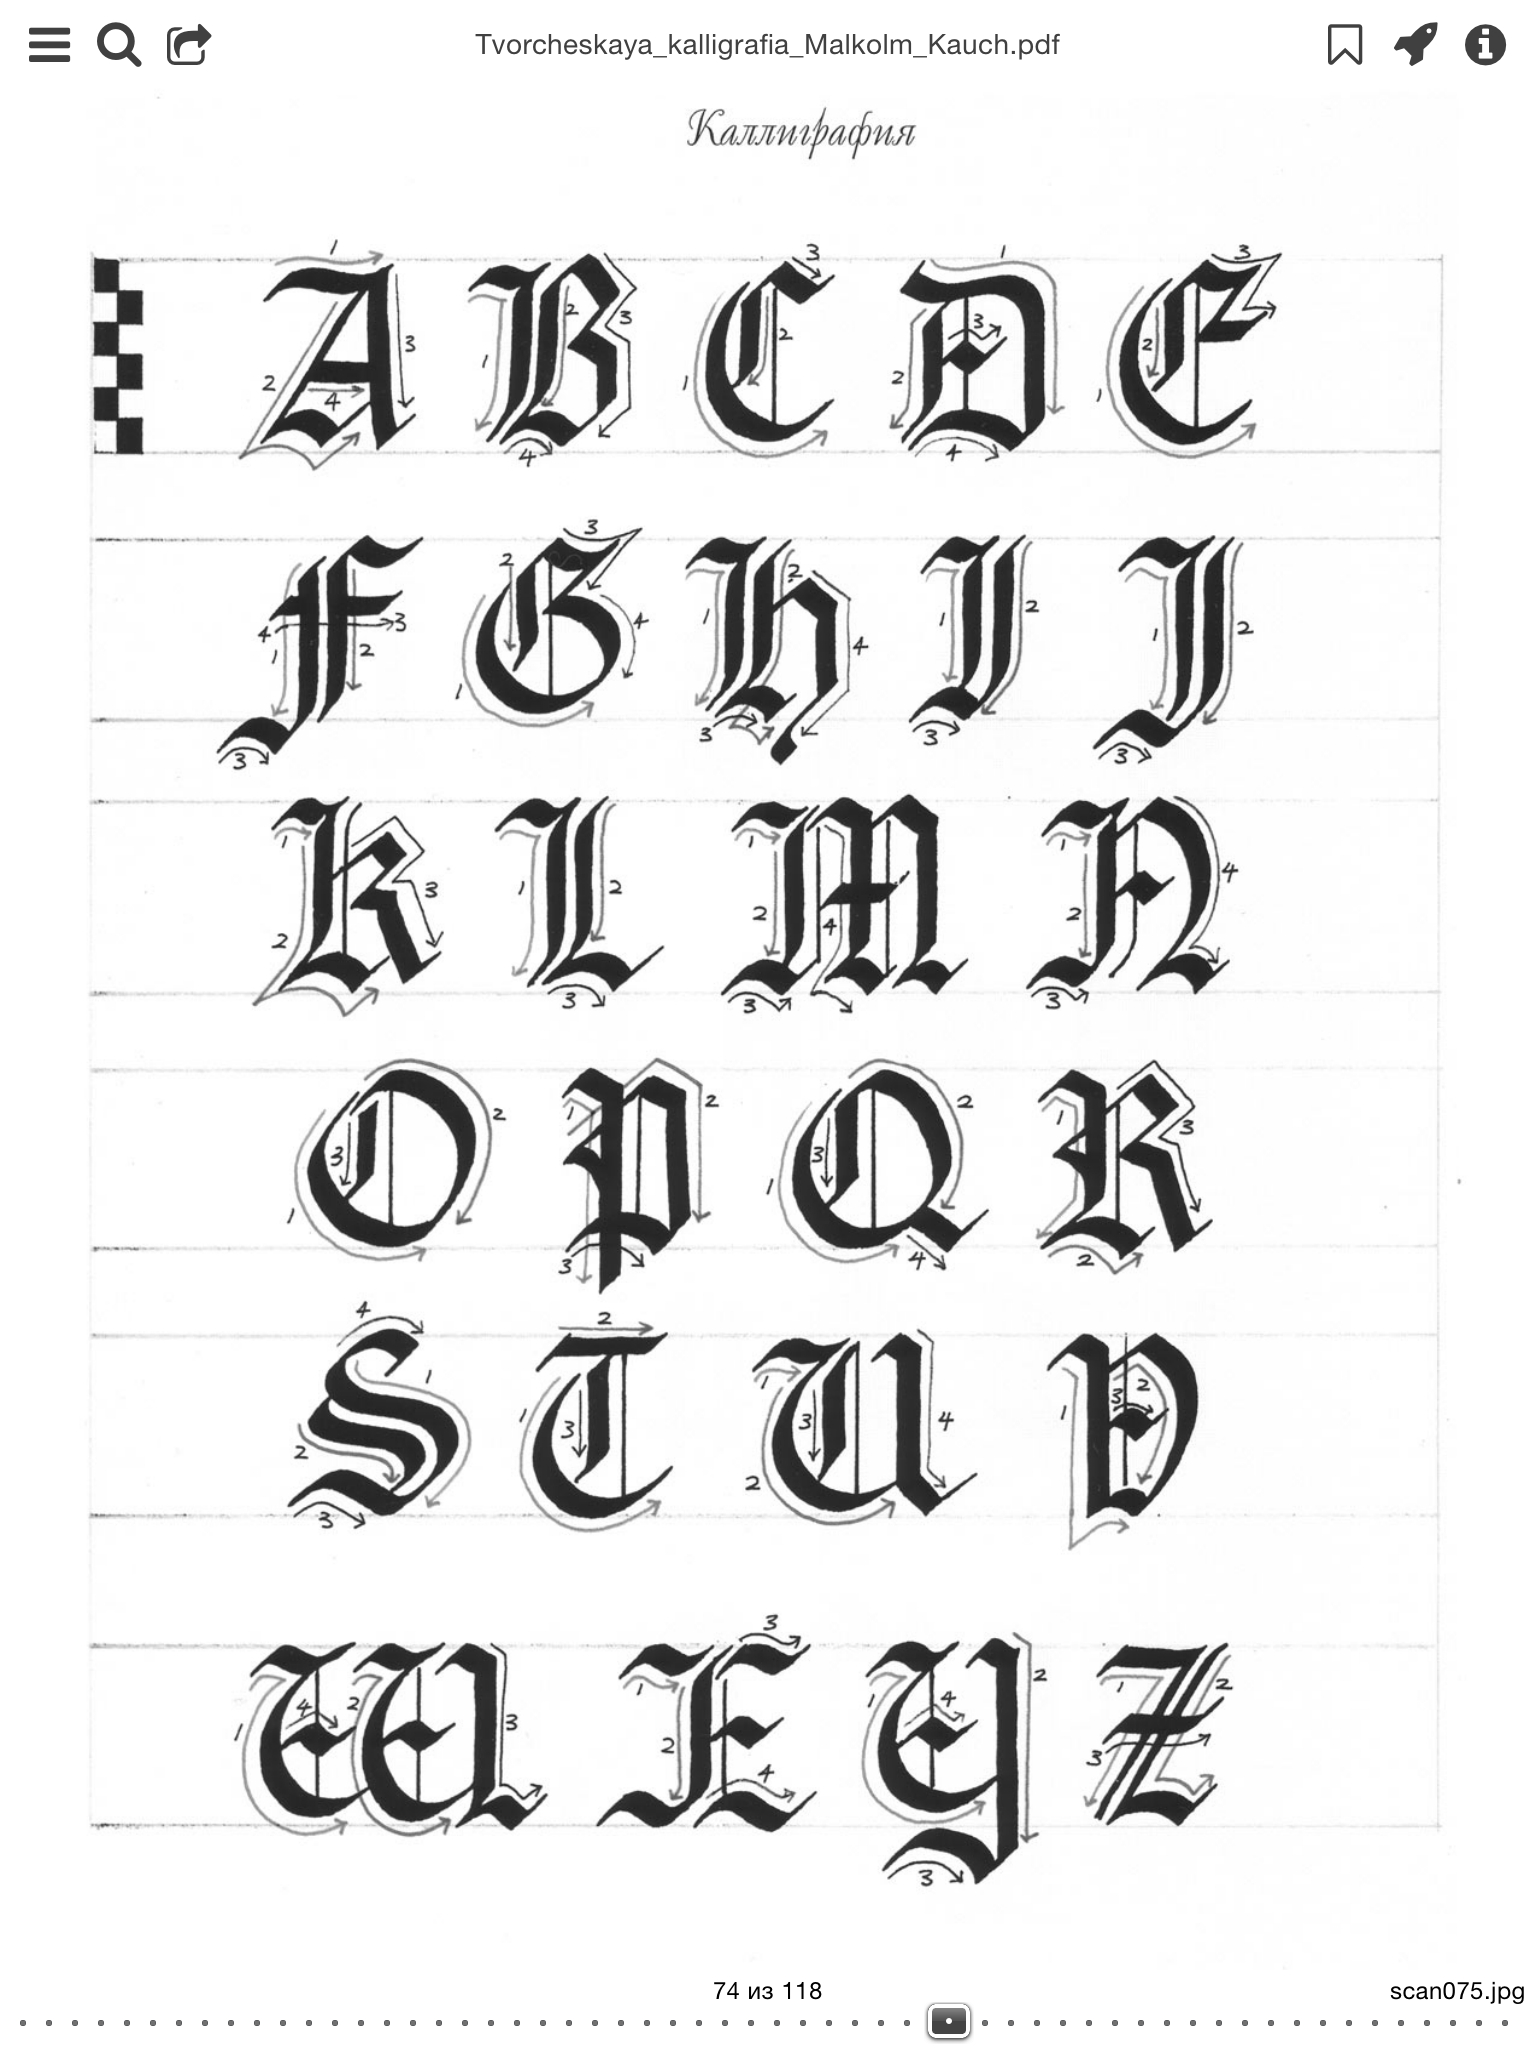 Ecriture Gothique | Calligraphie Gothique, Caligraphie dedans Modele Calligraphie Alphabet Gratuit